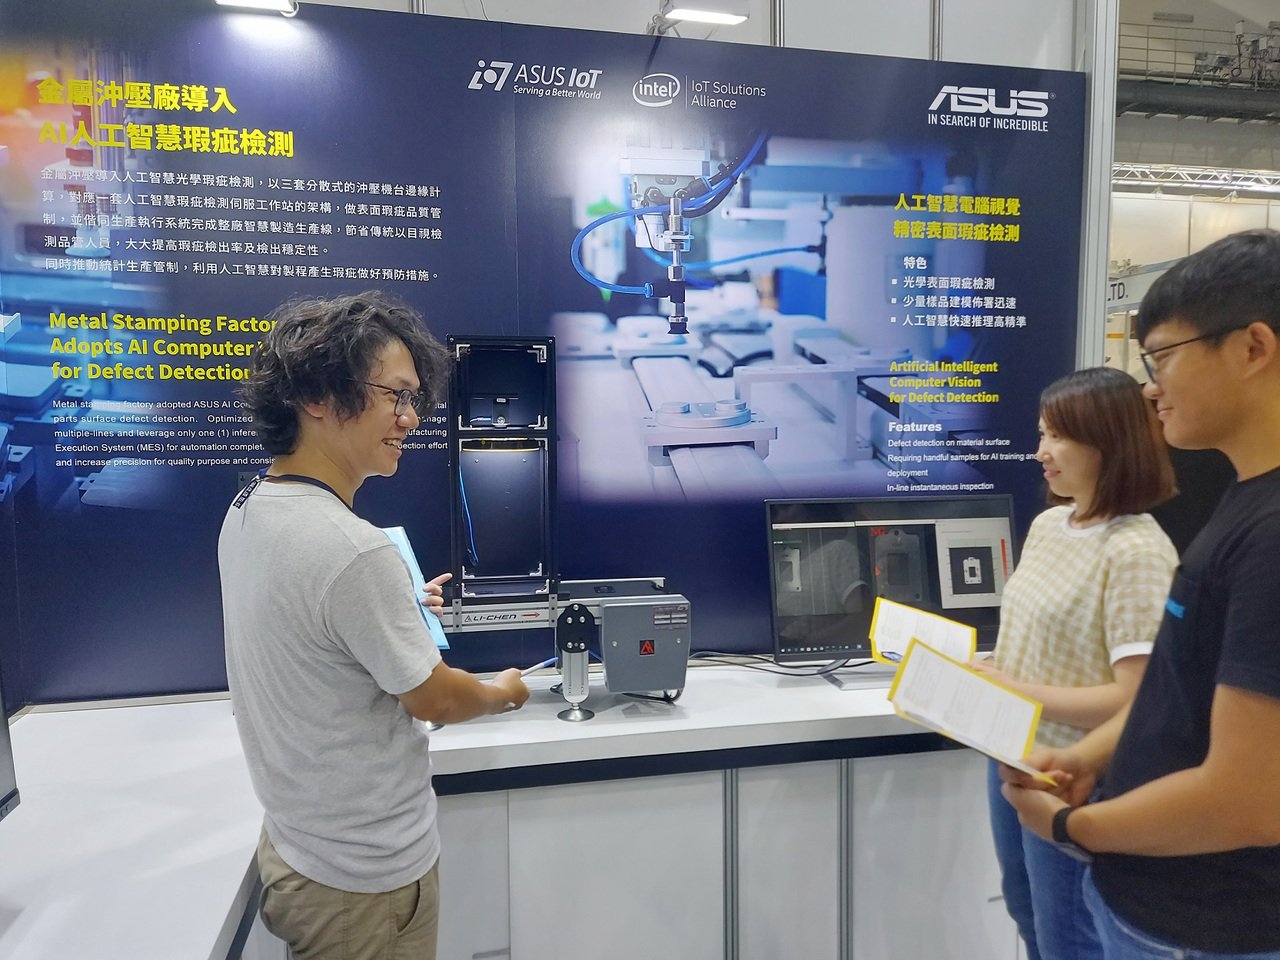 華碩智慧製造解決方案於台北國際自動化工業大展登場